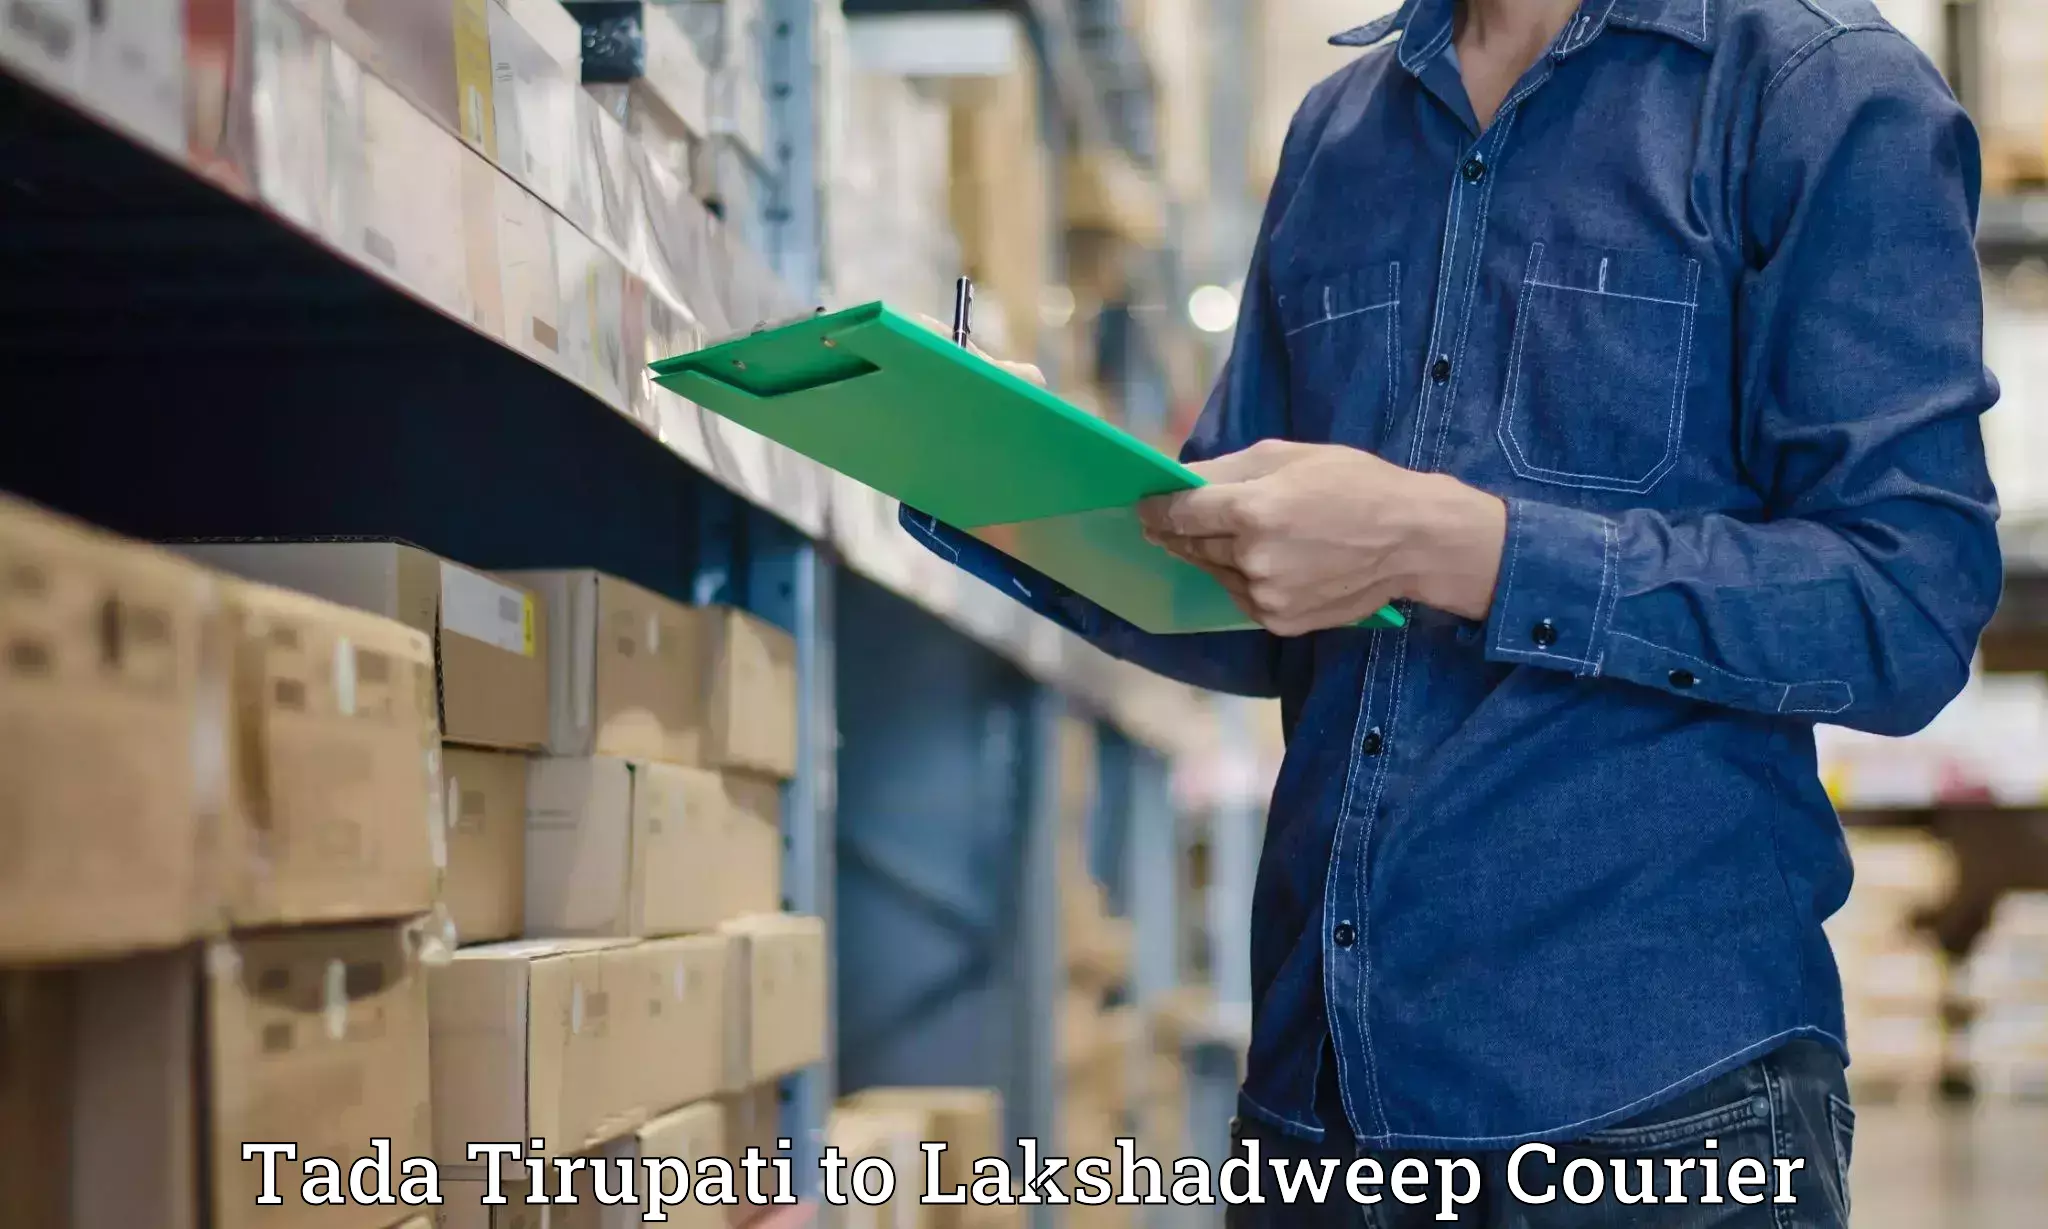 Baggage shipping service Tada Tirupati to Lakshadweep